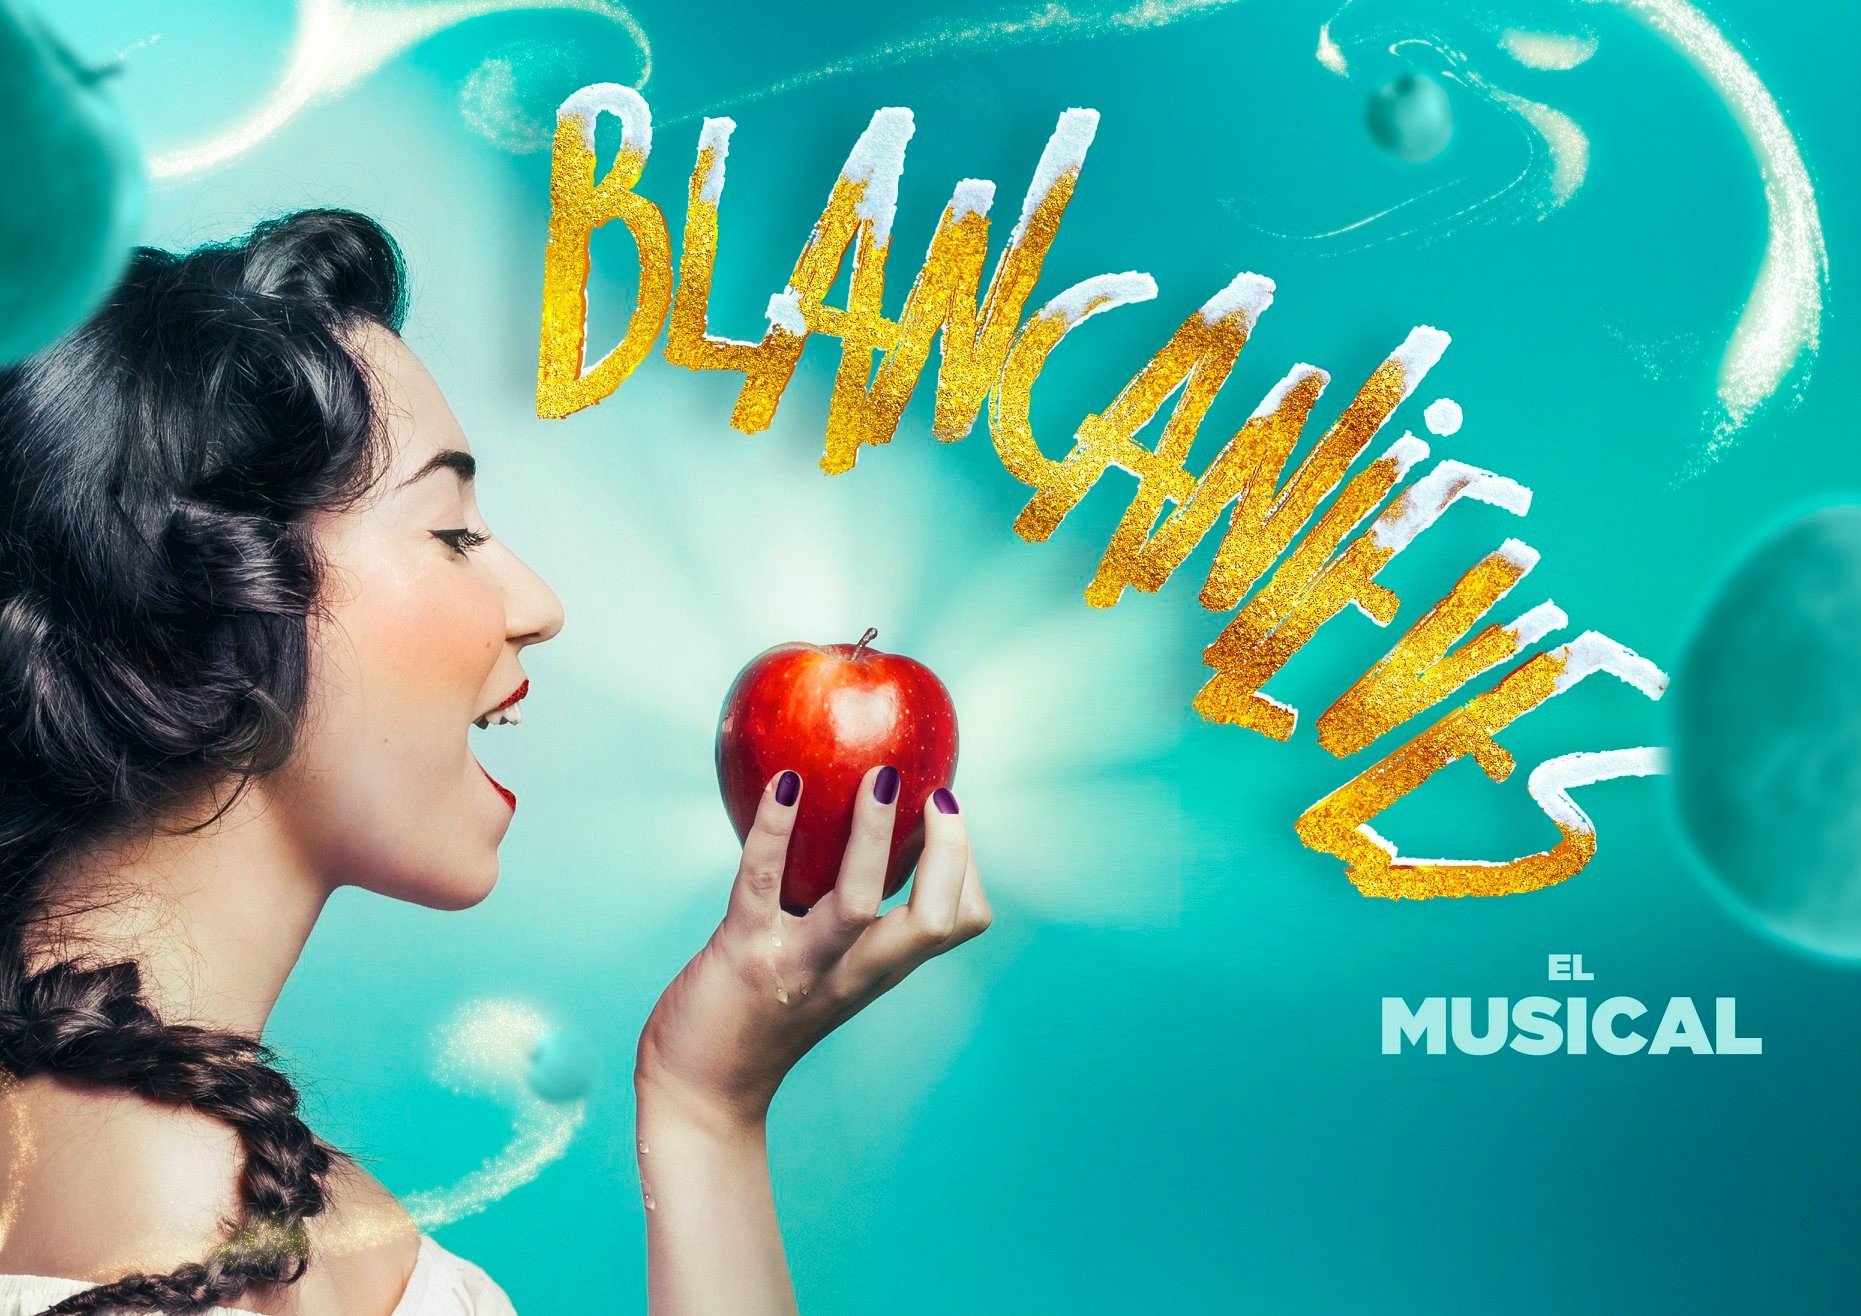 “Blancanieves. El Musical”, próximo estreno de teatro inclusivo en España